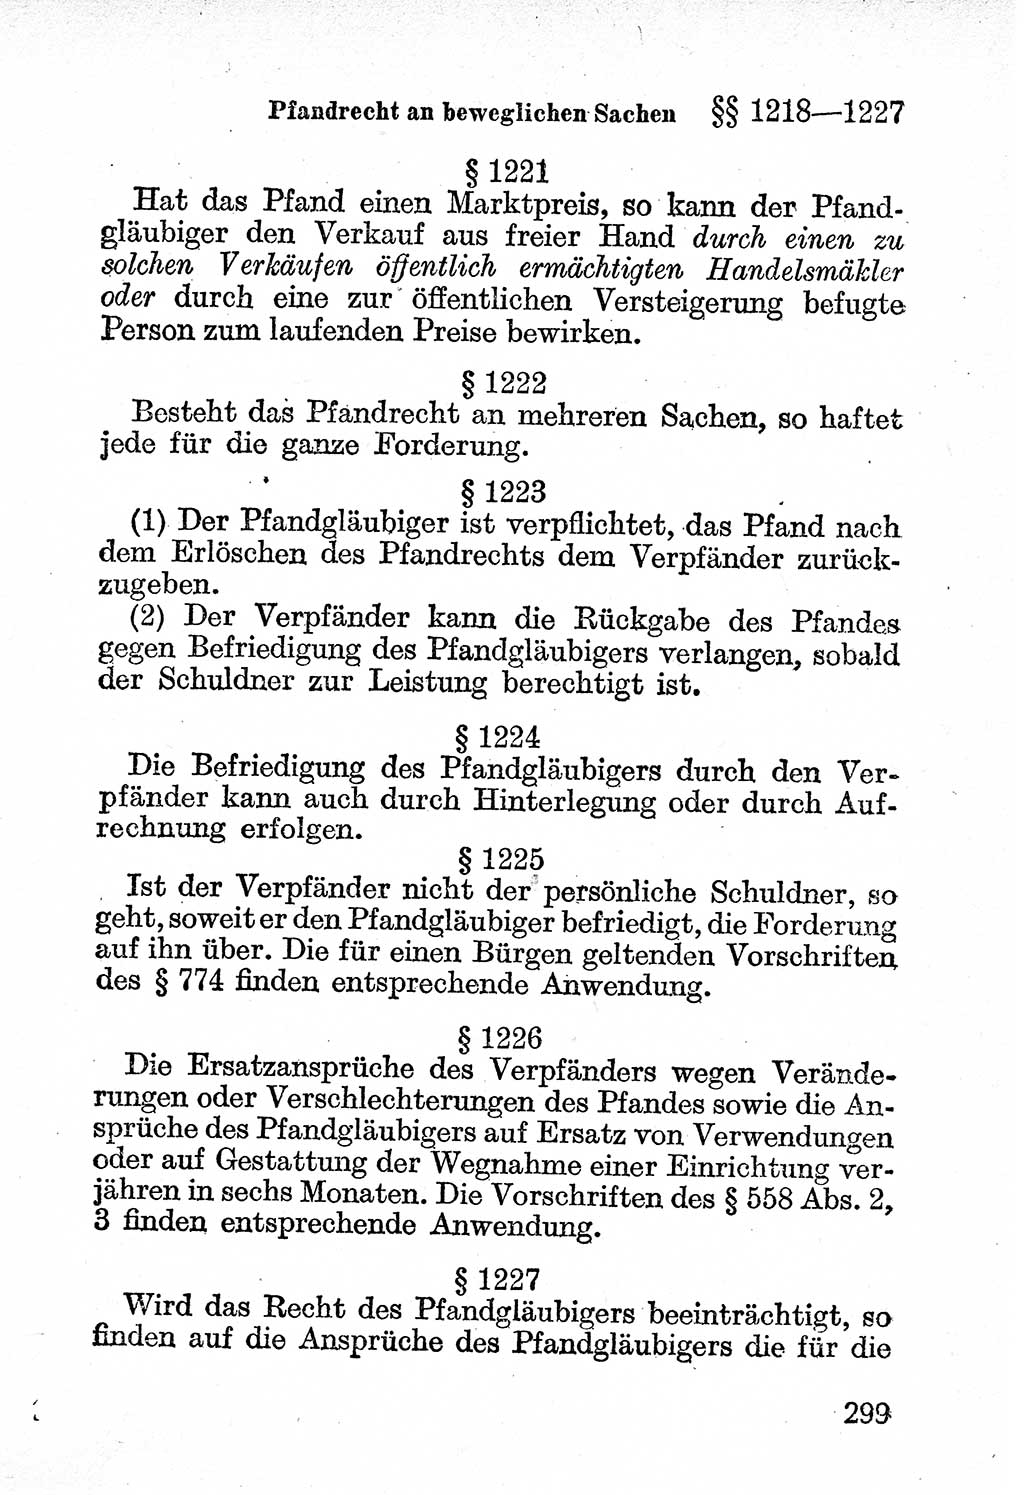 Bürgerliches Gesetzbuch (BGB) nebst wichtigen Nebengesetzen [Deutsche Demokratische Republik (DDR)] 1956, Seite 299 (BGB Nebenges. DDR 1956, S. 299)